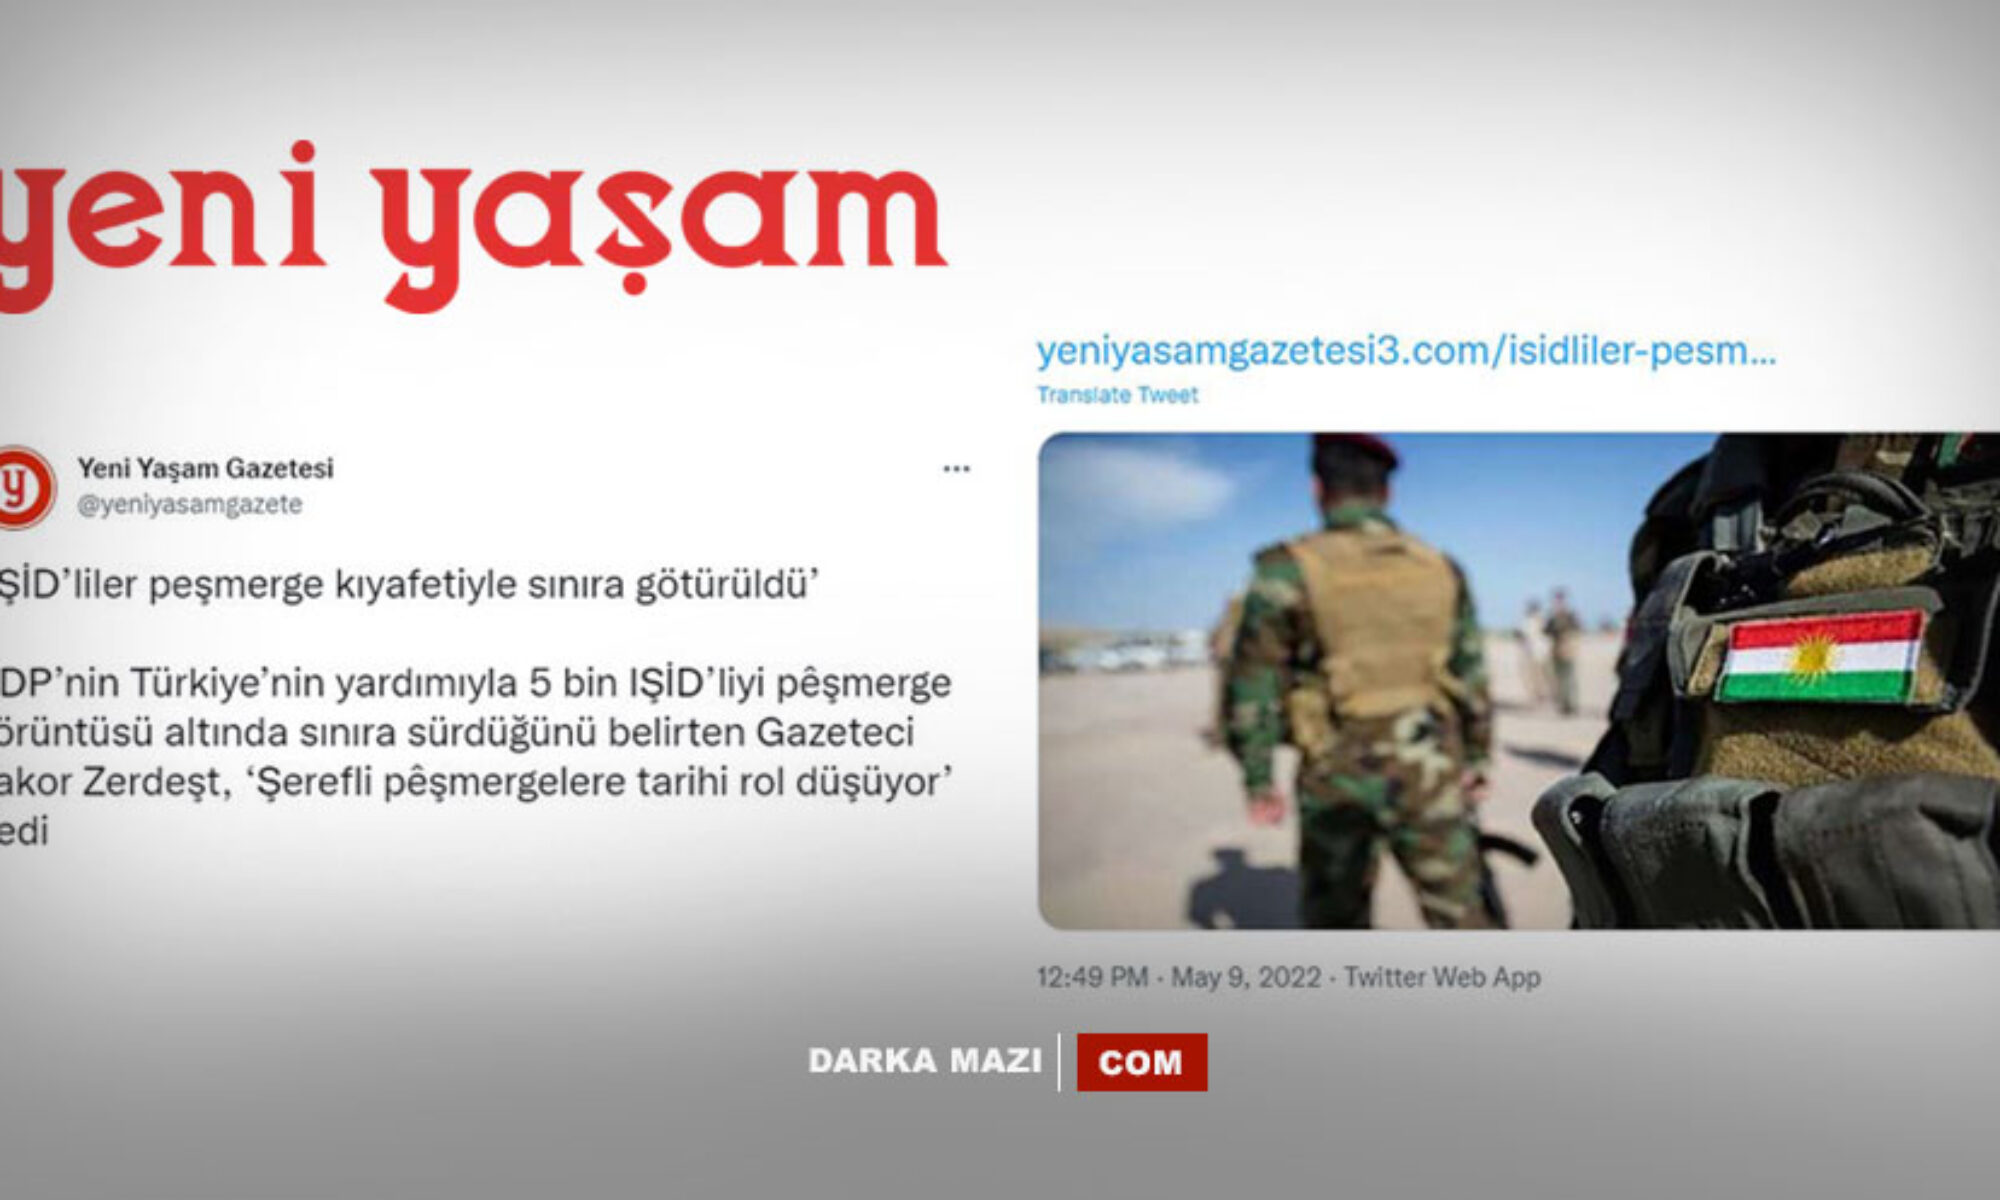 Ahlaksız, Yeni Yaşam Gazetesi “IŞİD’liler Peşmerge kıyafeti ile operasyona katıldı” iftirasını sildi